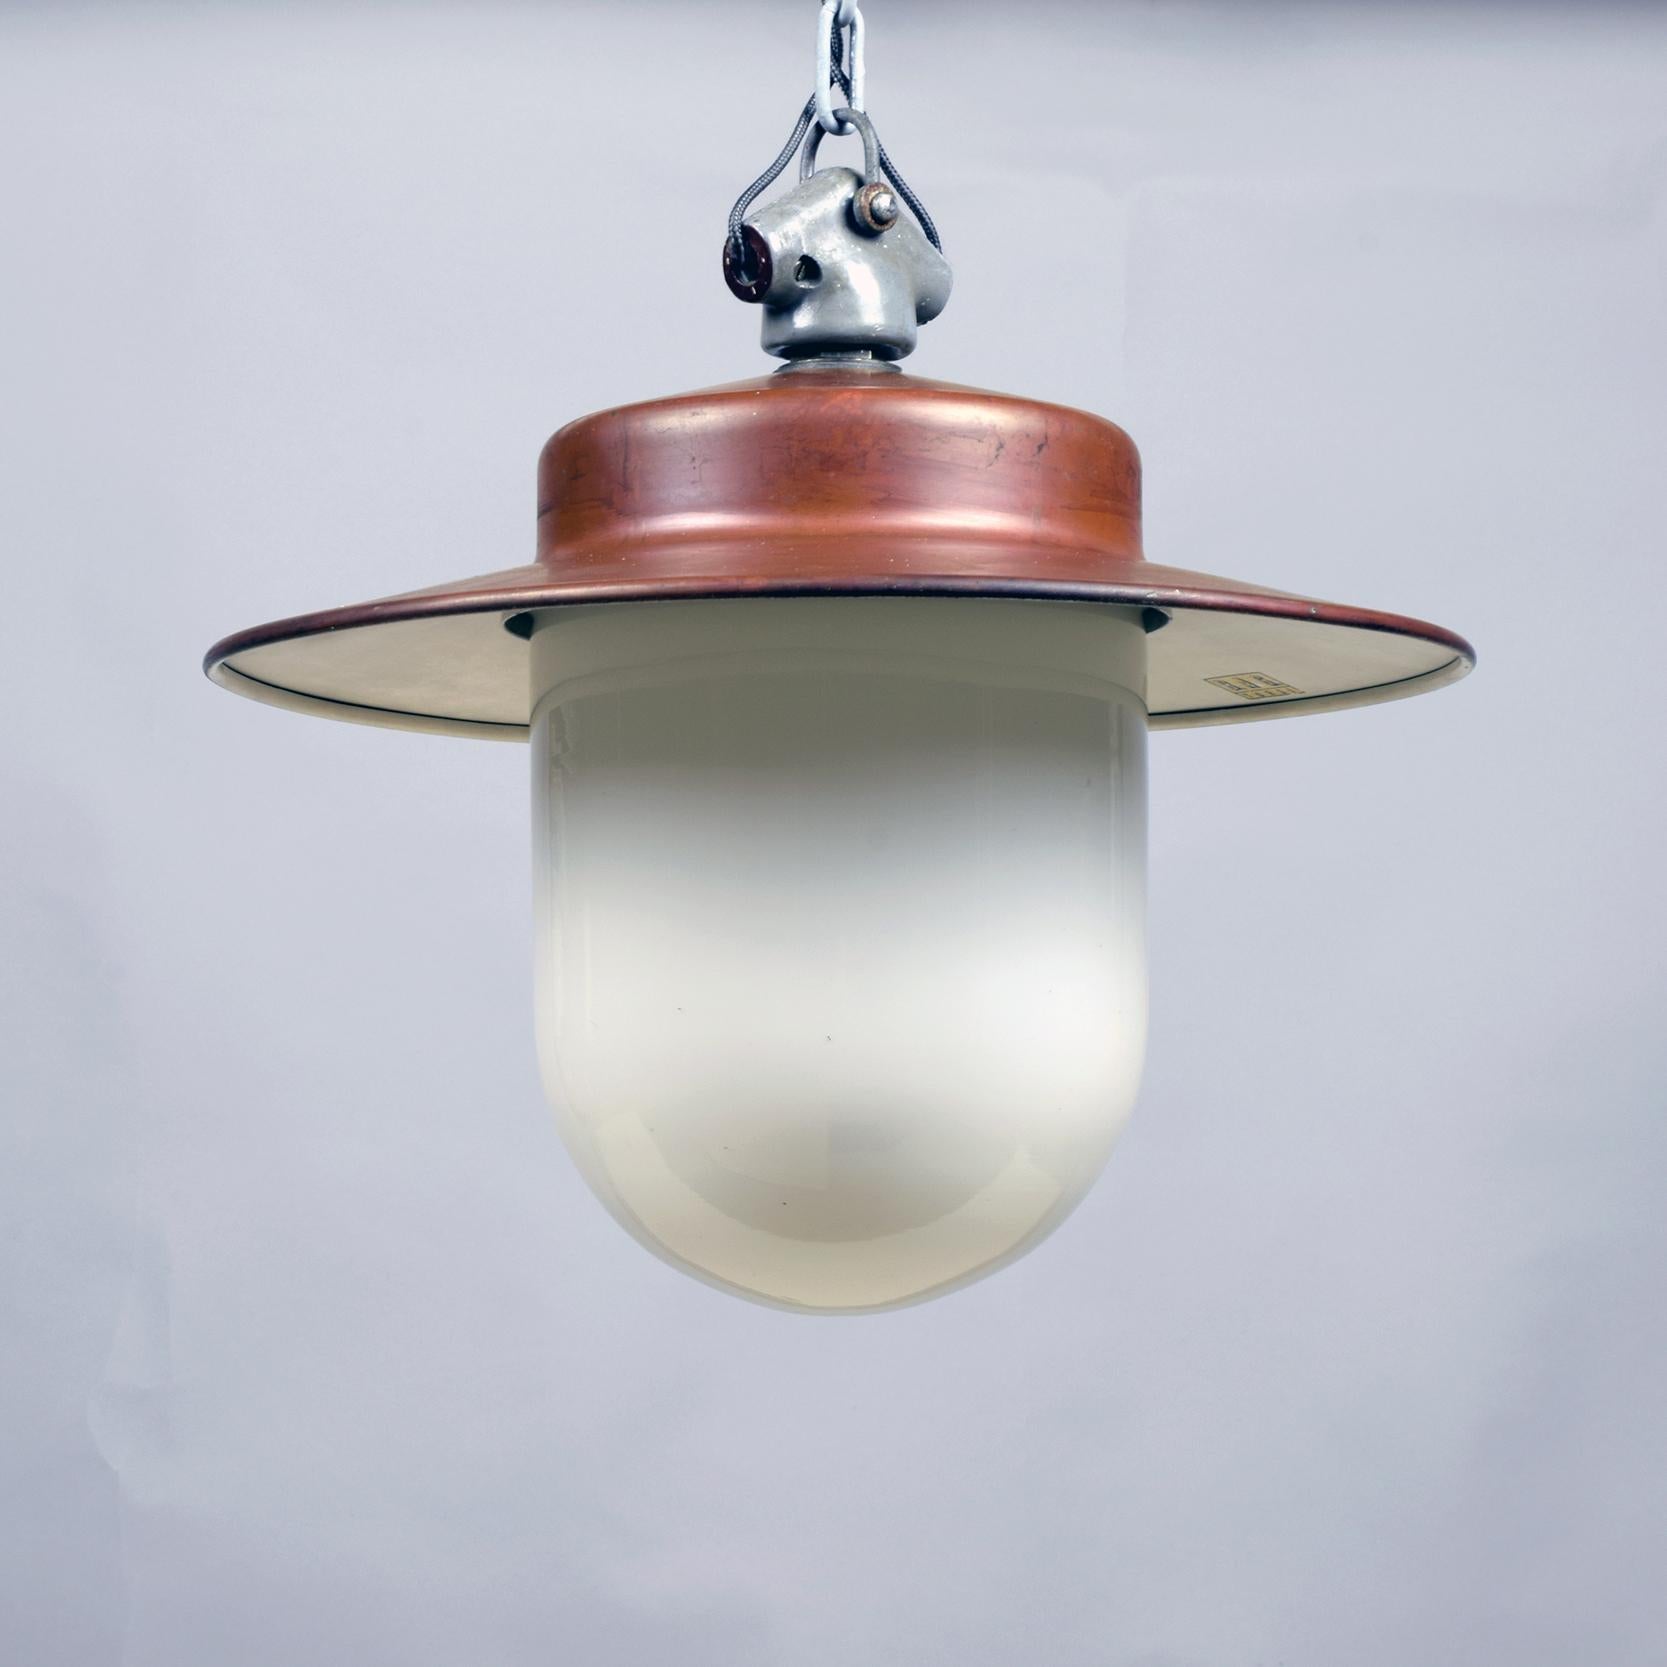 Hin Bredendieck (Designer) attribué.
B.A.G. Turgi (fabricant)
Lampe à suspension industrielle, vers 1930

Une lampe industrielle étonnante et élégante, diffusant une lumière agréable et diffuse.

Cuivre et verre blanc opaque avec un raccord